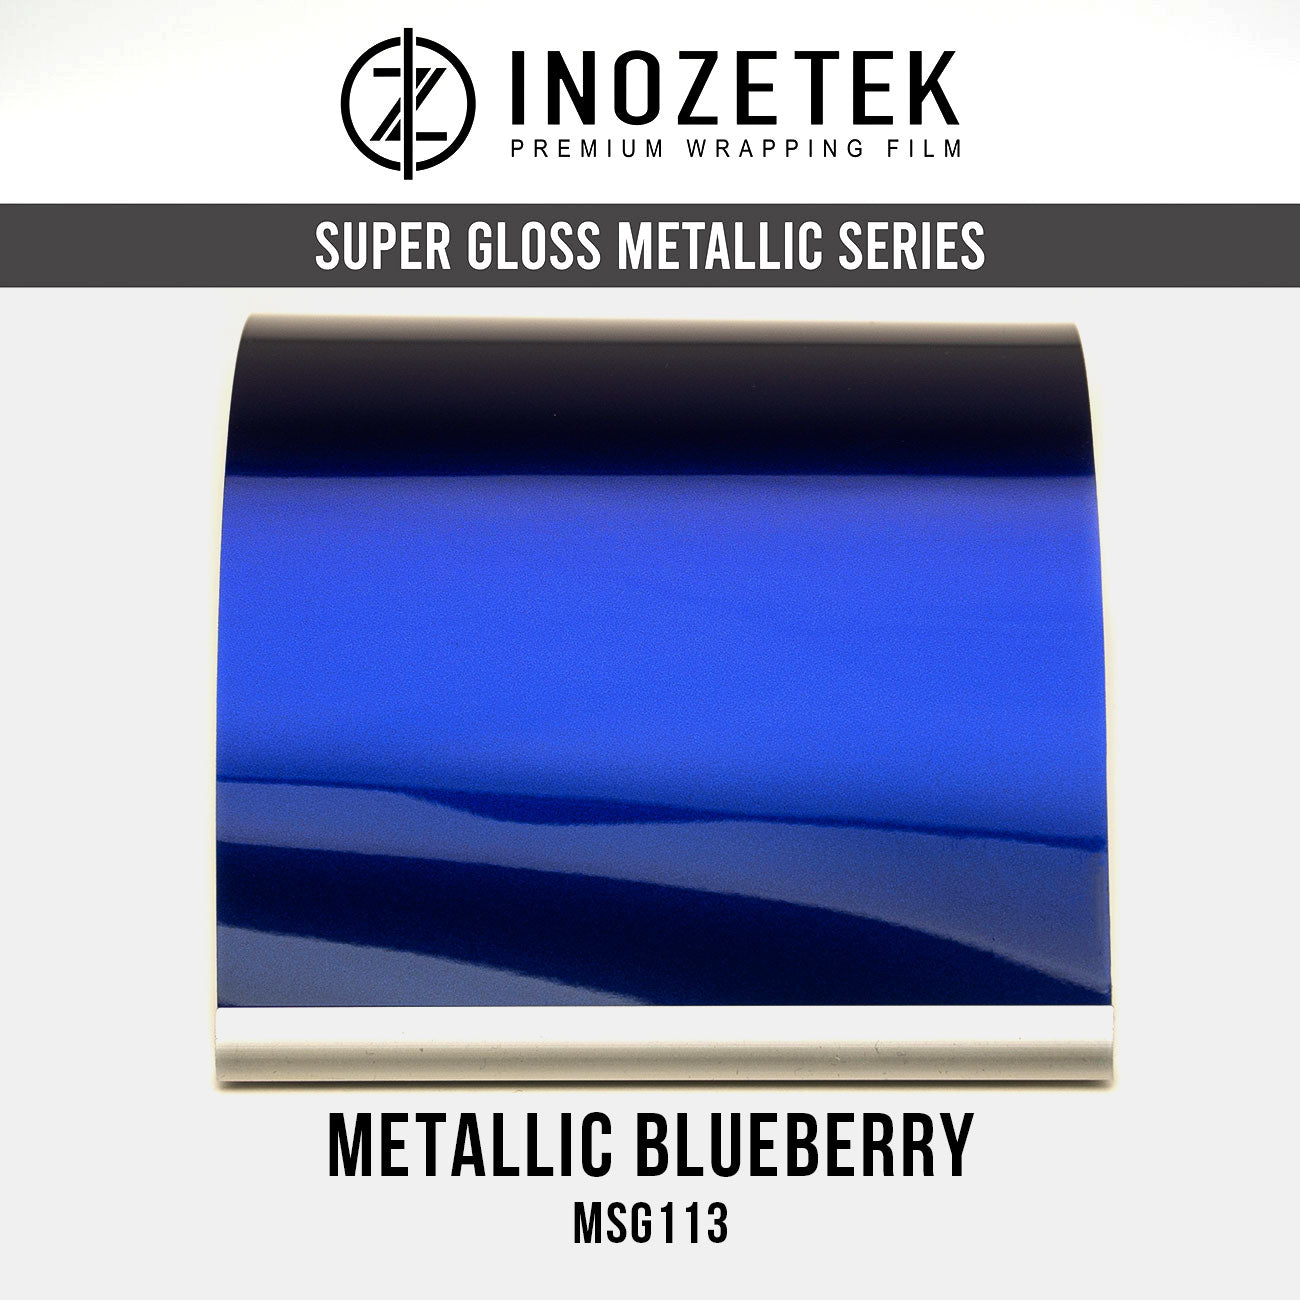 Super Gloss Metallic Blueberry - Inozetek USA